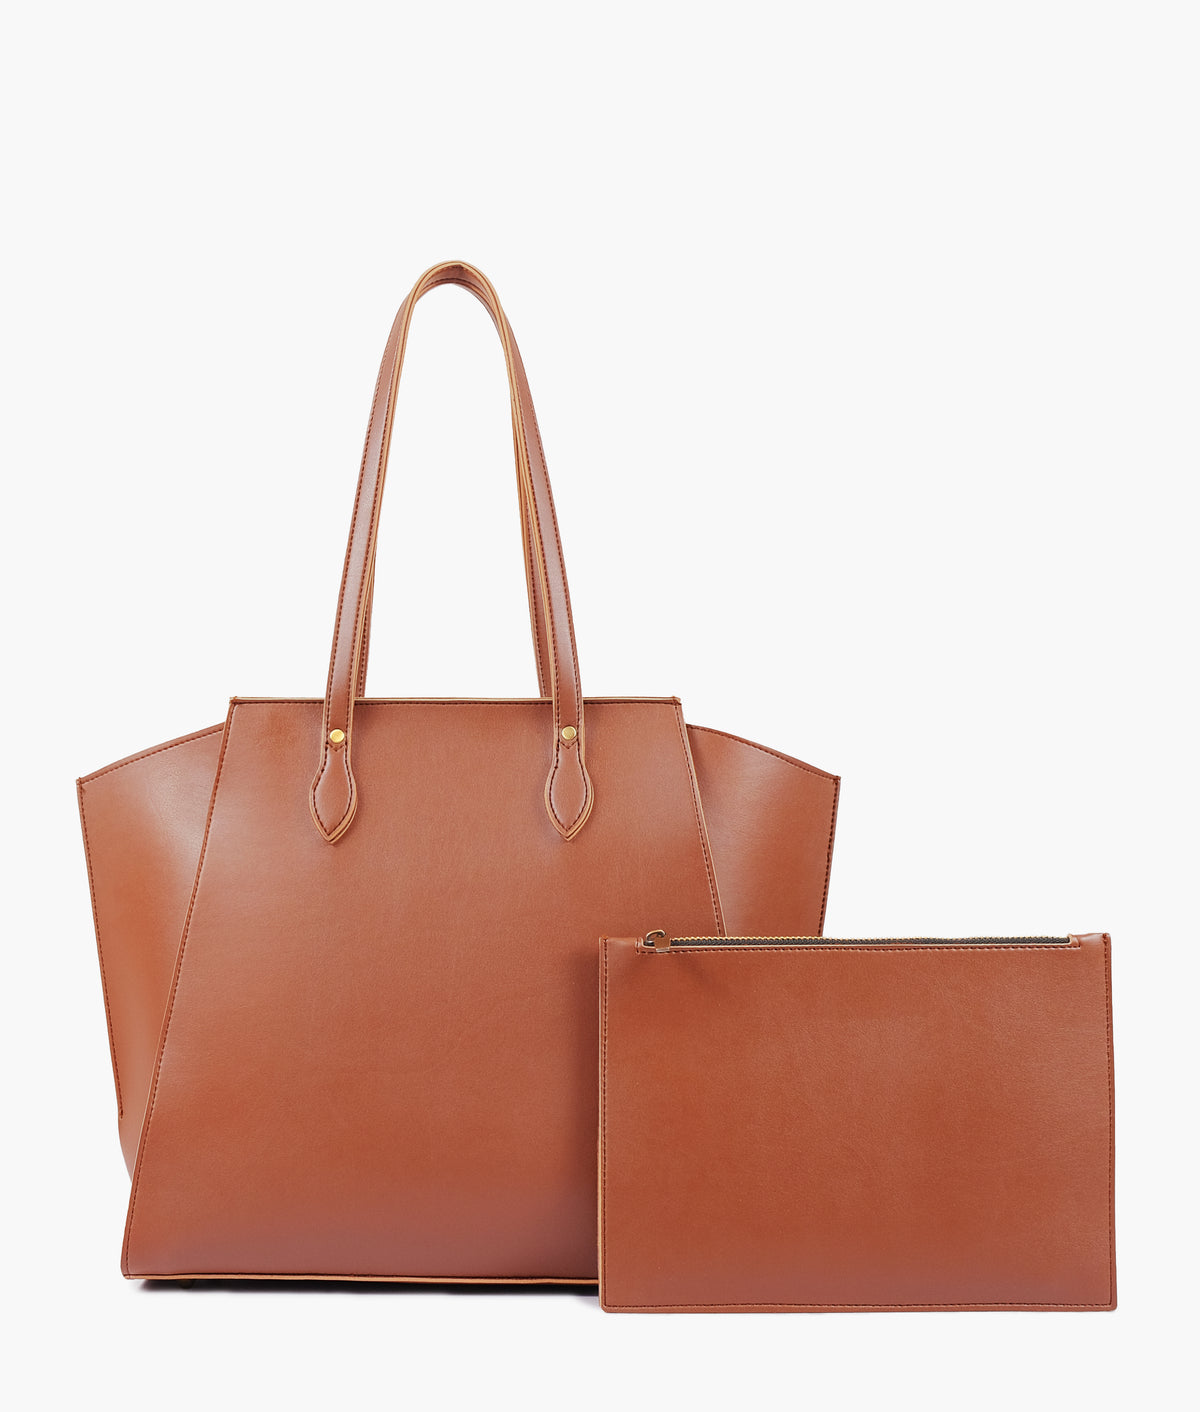 Brown classic tote bag